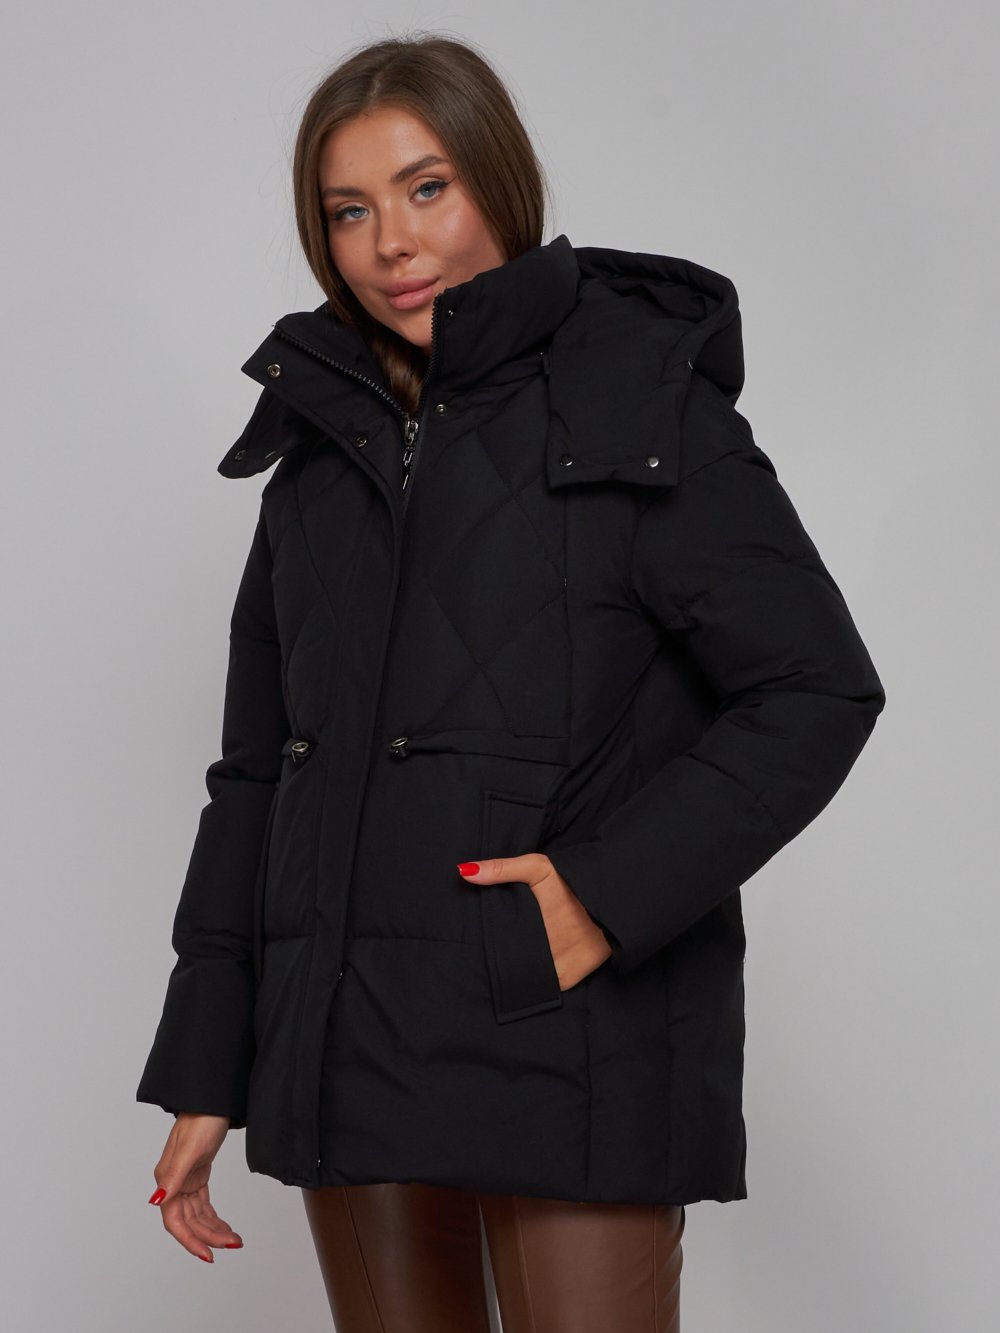 Купить куртку зимнюю оптом от производителя недорого в Москве 52302Ch 1